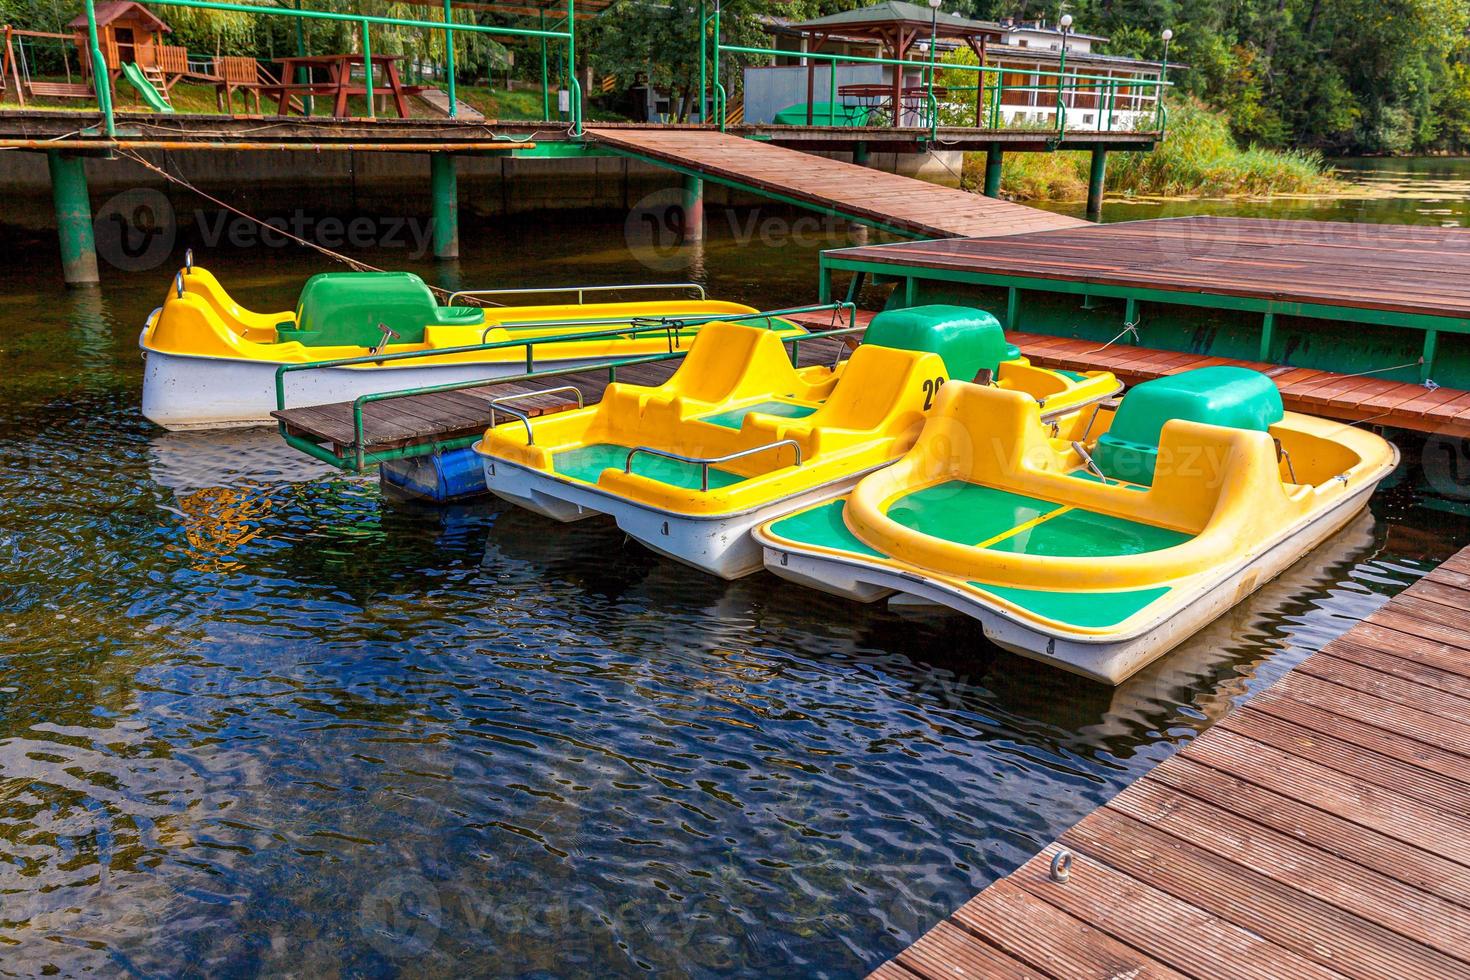 waterfietsen of waterfietsen catamarans station. gele waterfietsen vergrendeld op de pier van de jachthaven van het meer op zonnige zomerdag. zomer vrijetijdsbesteding buitenshuis. foto